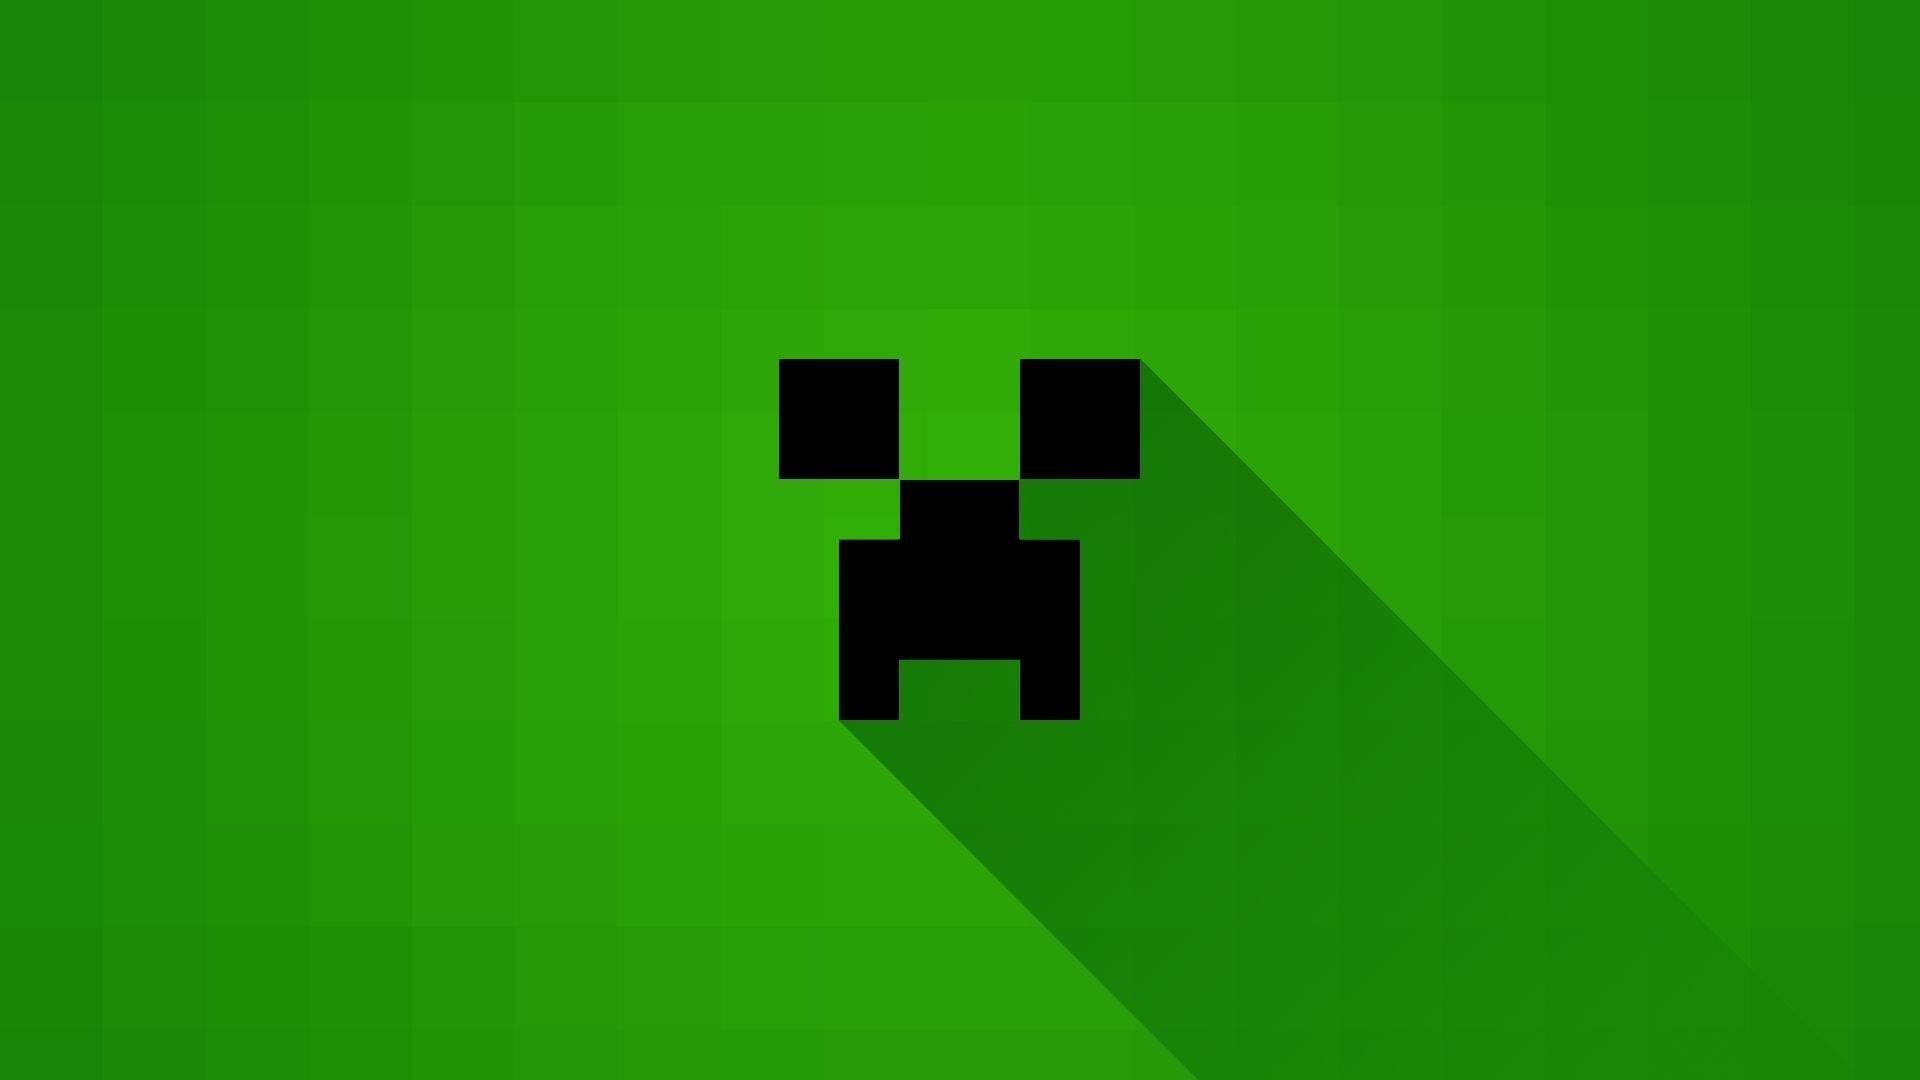 Minecraft Creeper Wallpaper 1080p Click Wallpaper. Minecraft wallpaper, Minecraft, Video game symbols